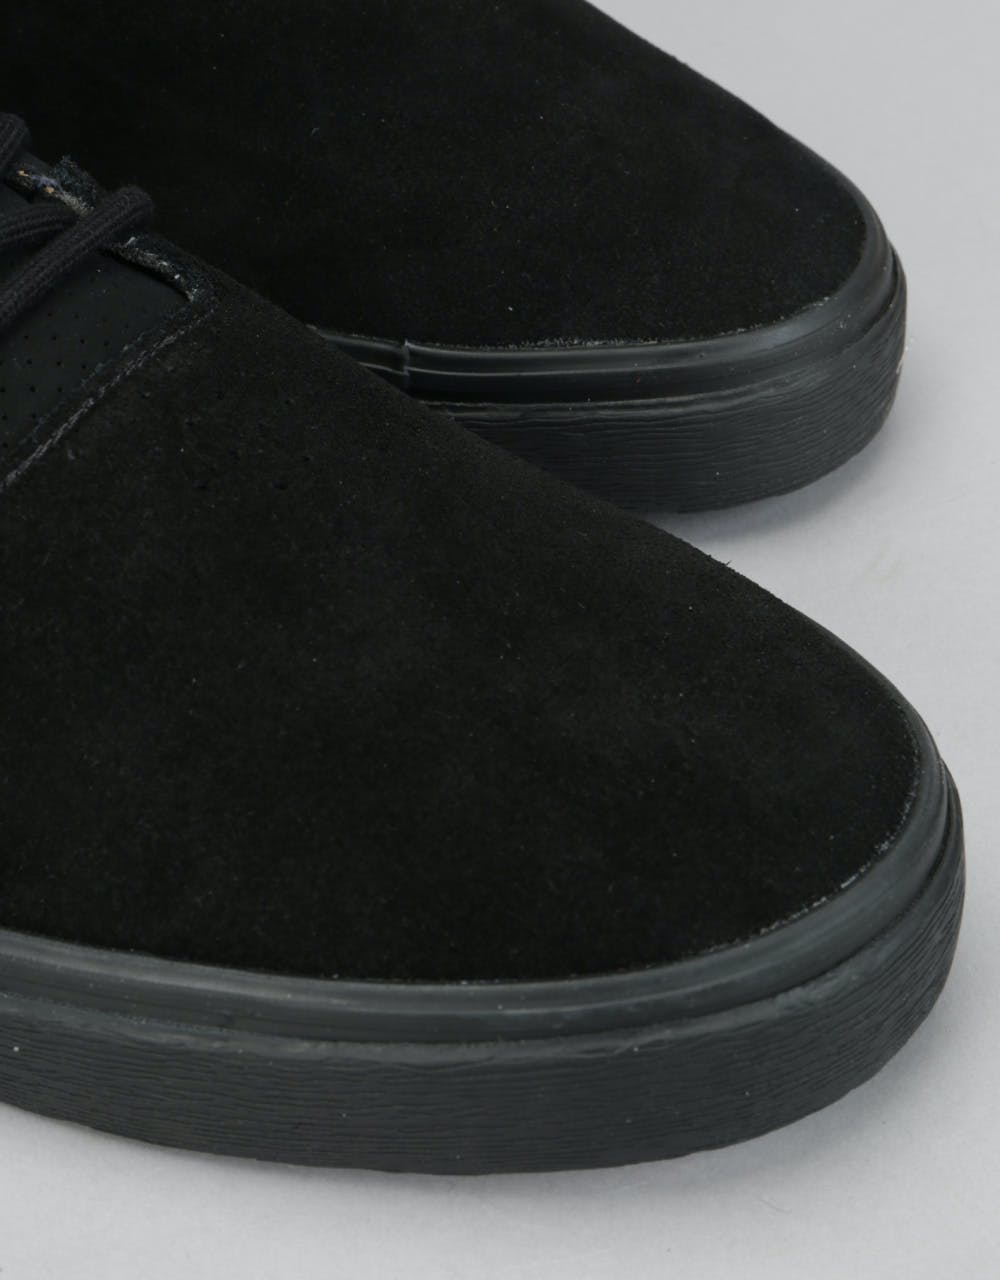 éS Accel Sq Skate Shoes - Black/Black/Grey